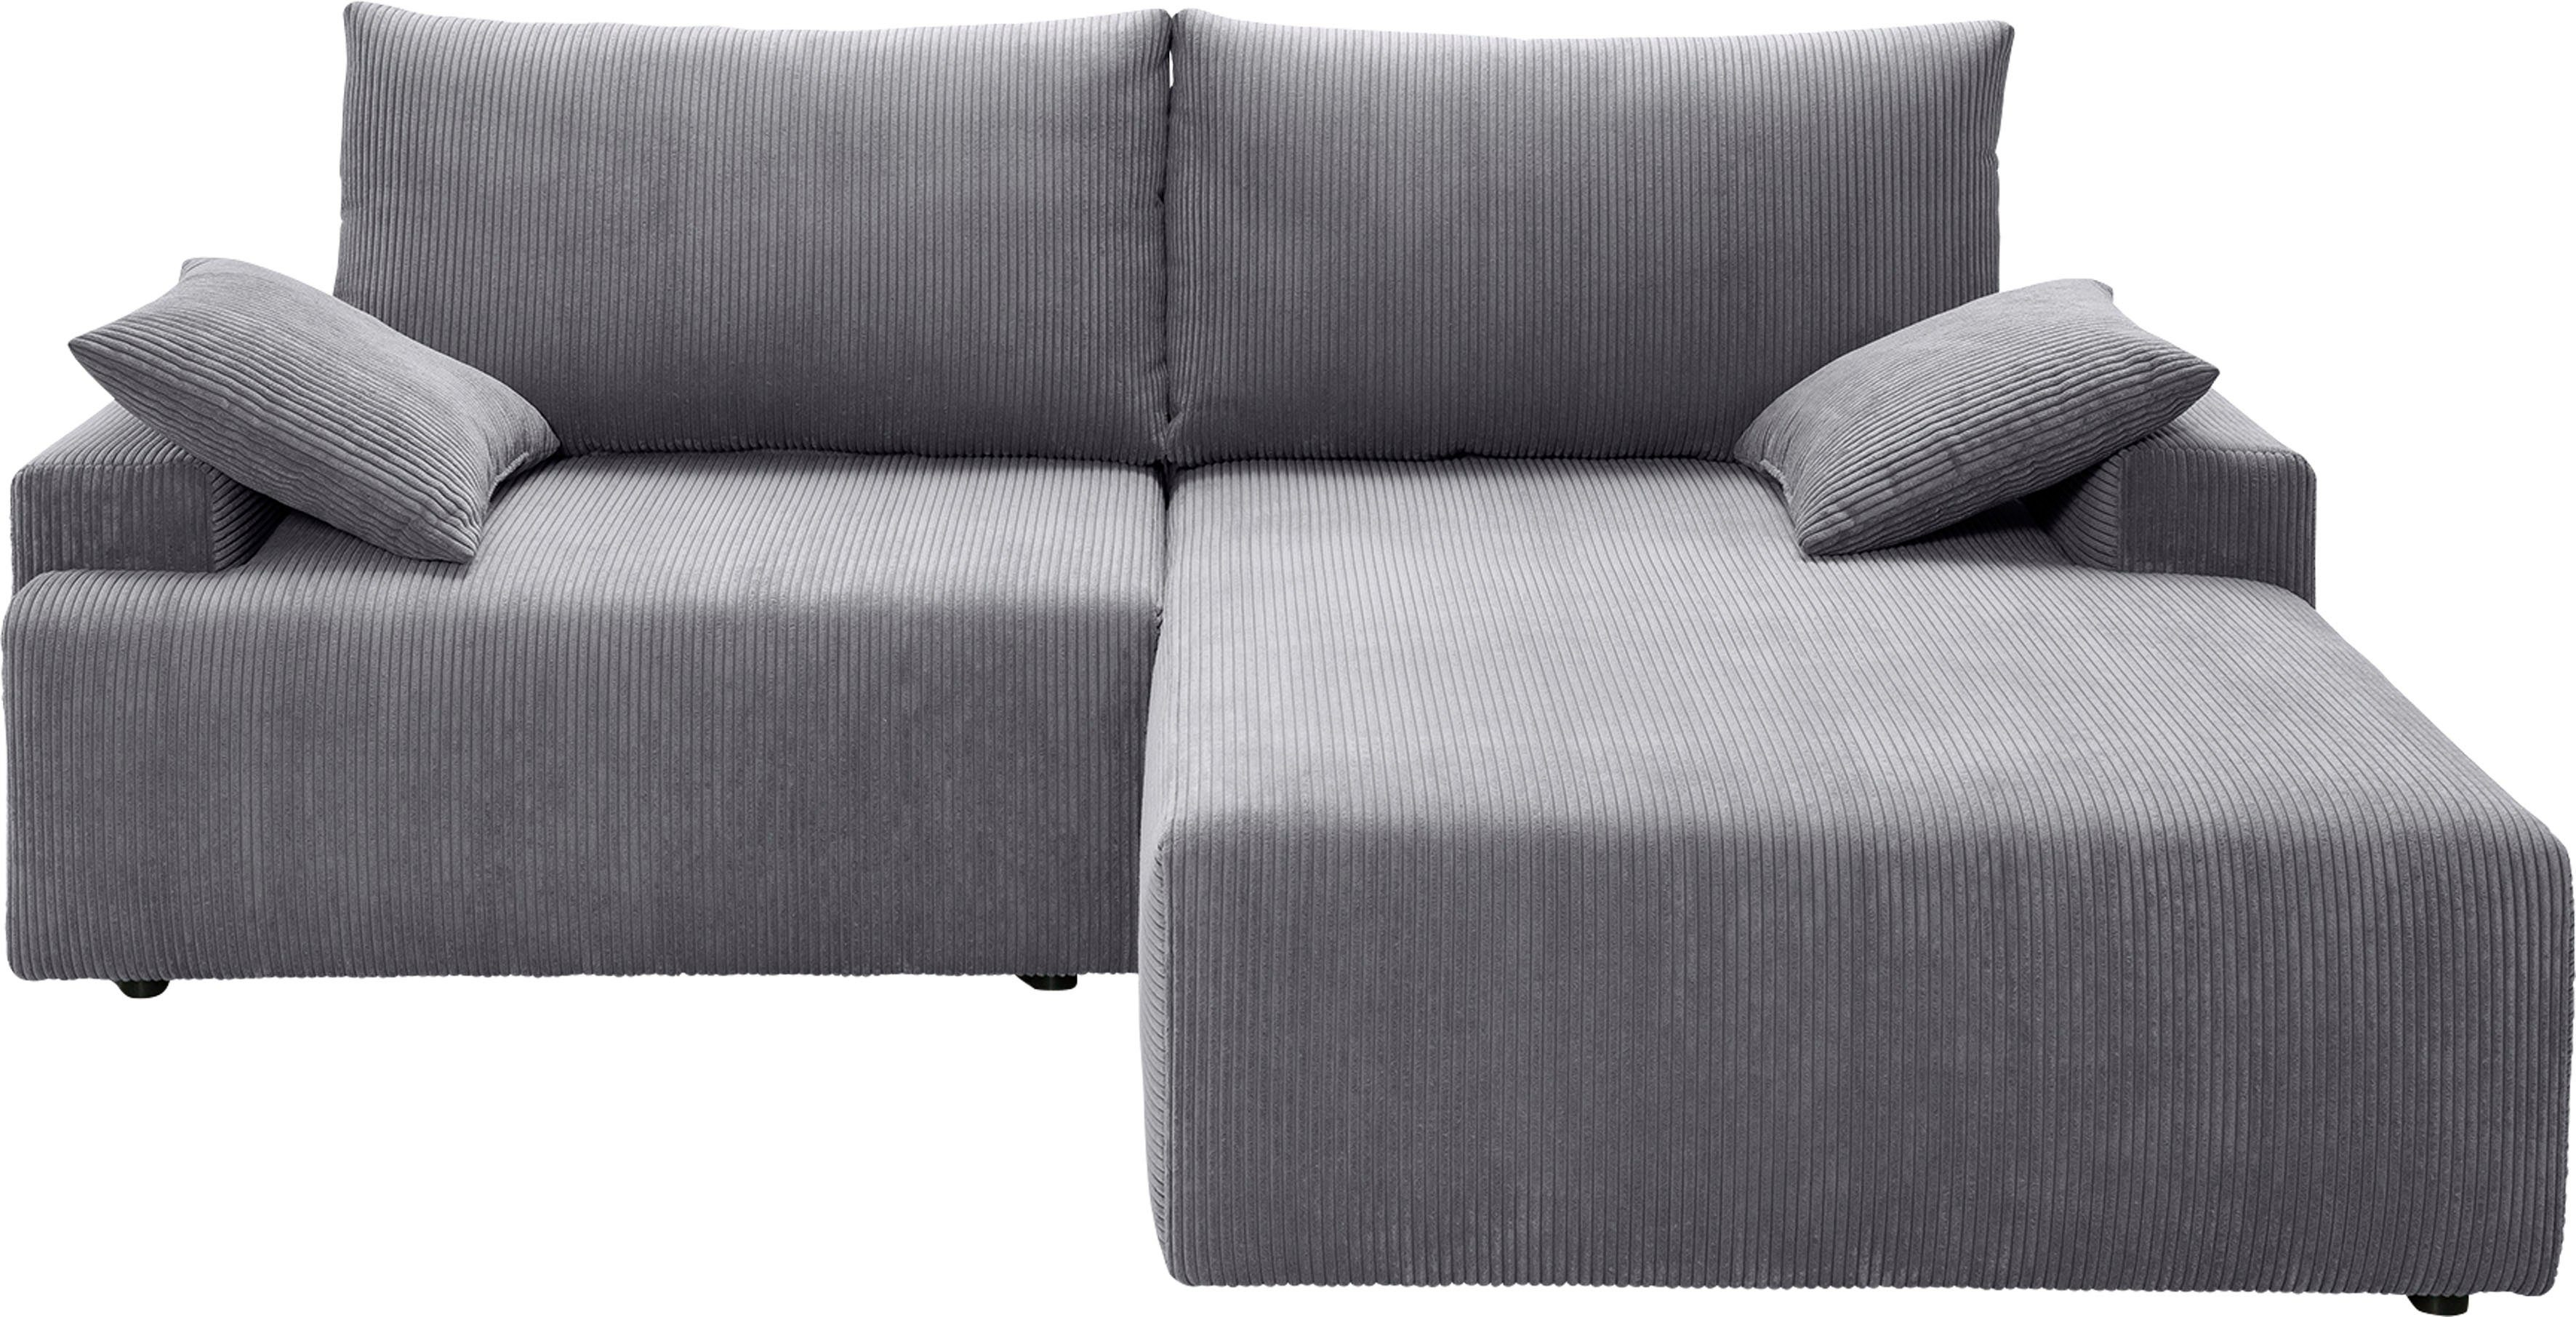 und Orinoko, grey Ecksofa Bettkasten fashion verschiedenen Cord-Farben exxpo in sofa - inklusive Bettfunktion